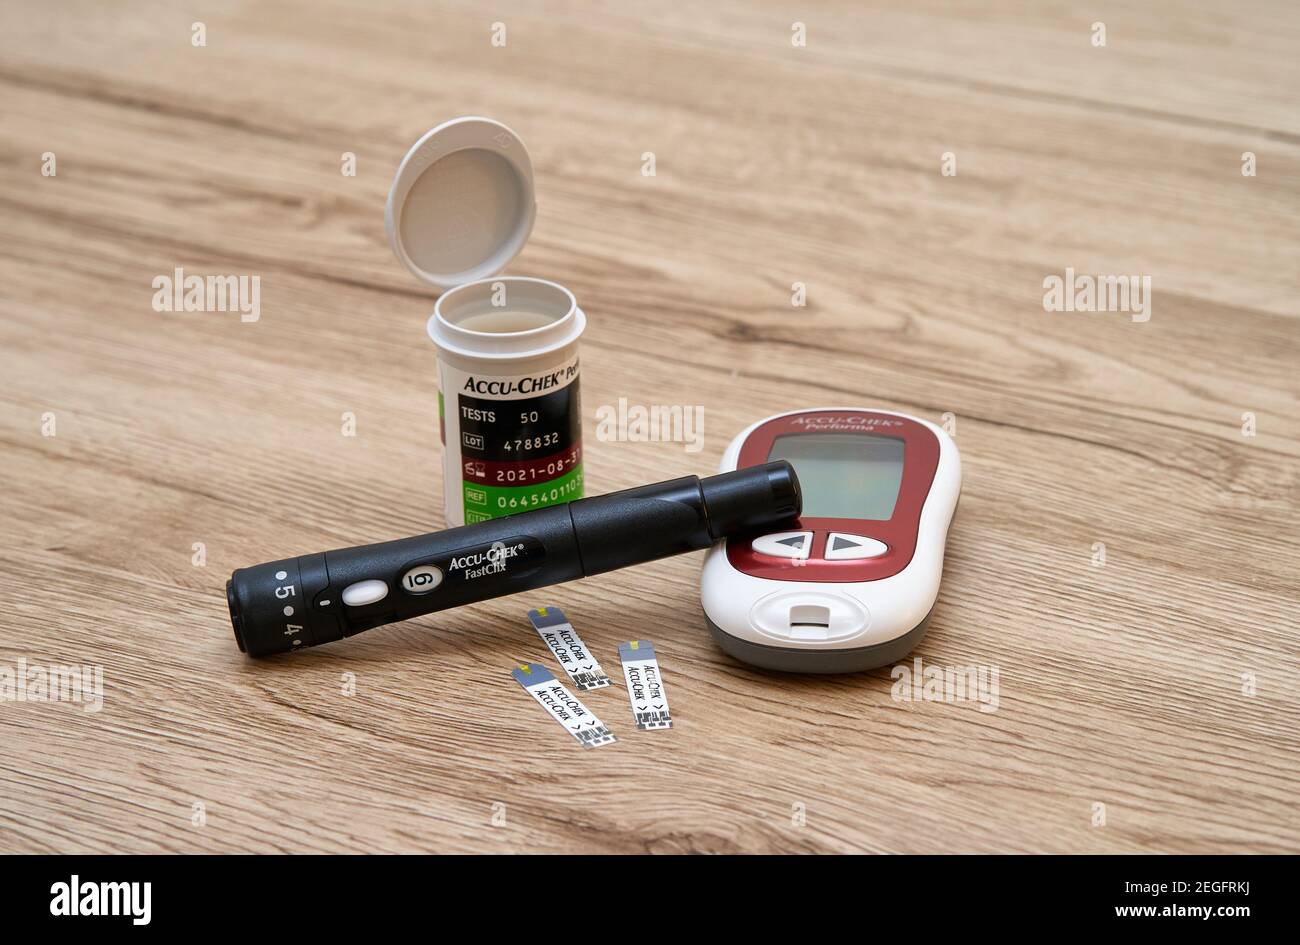 Attrezzatura Accu-Check per la misurazione della glicemia a casa - strisce e lancette per glucometro. Foto Stock